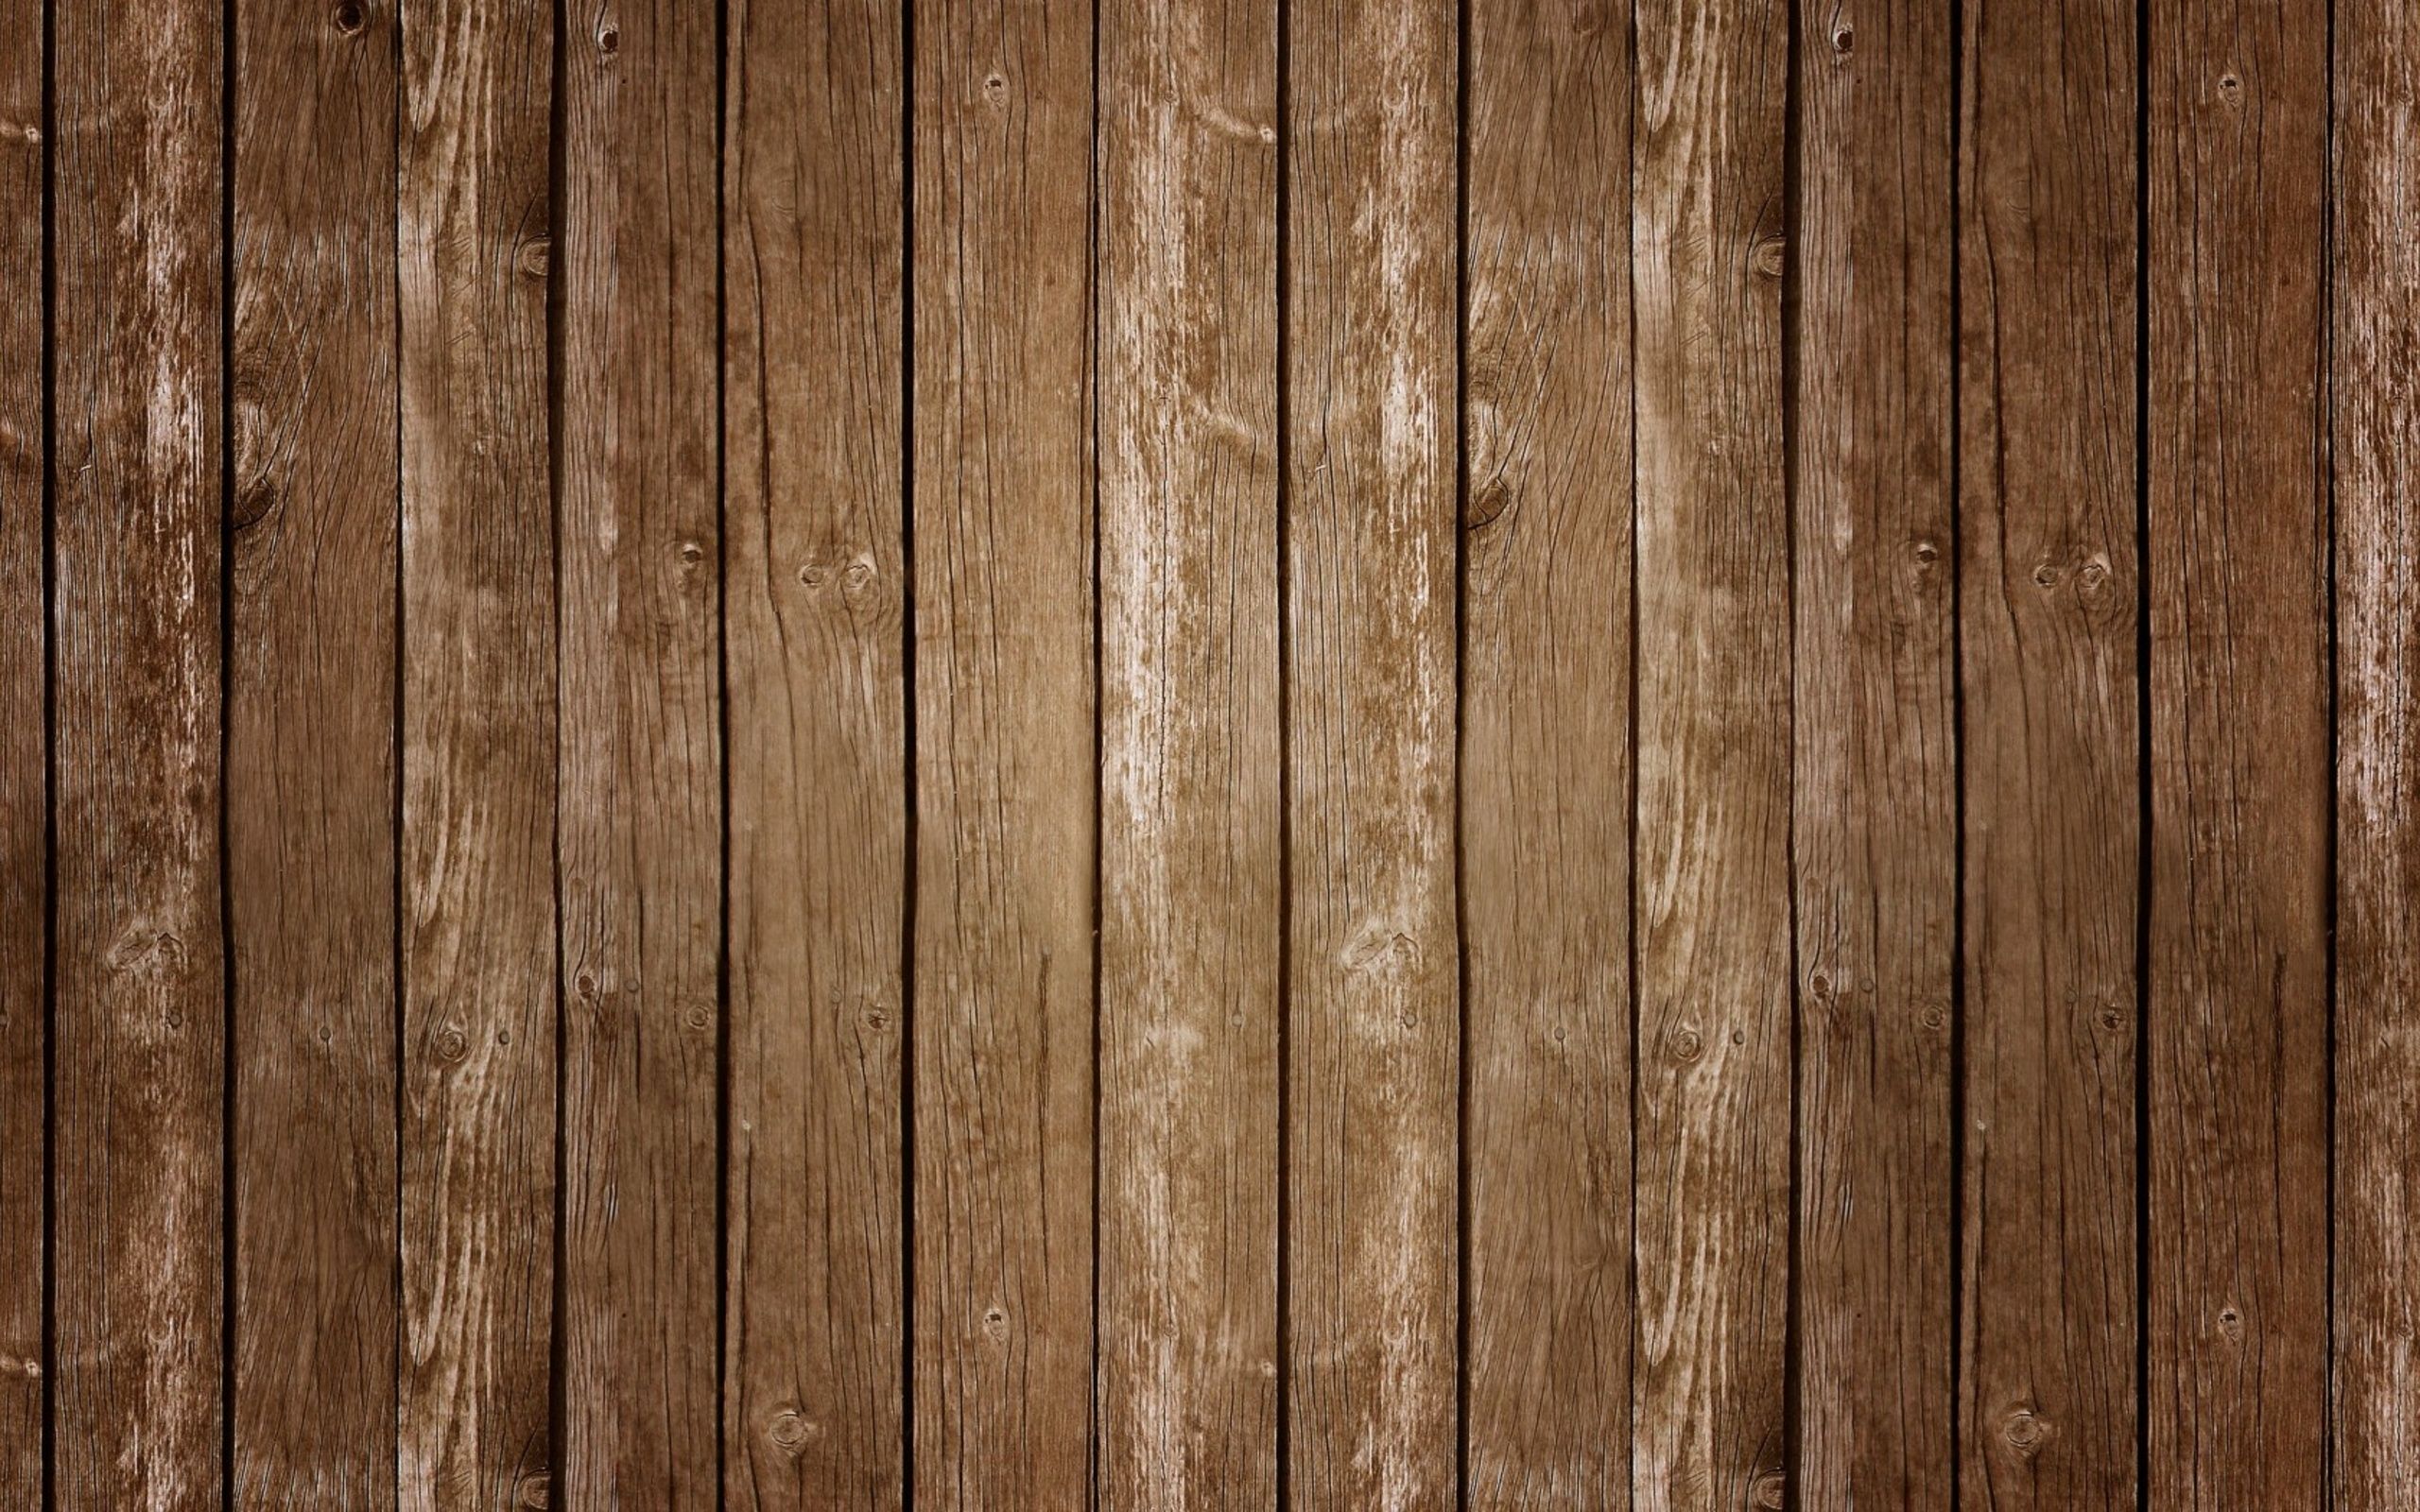 Wood Floor Background 3.